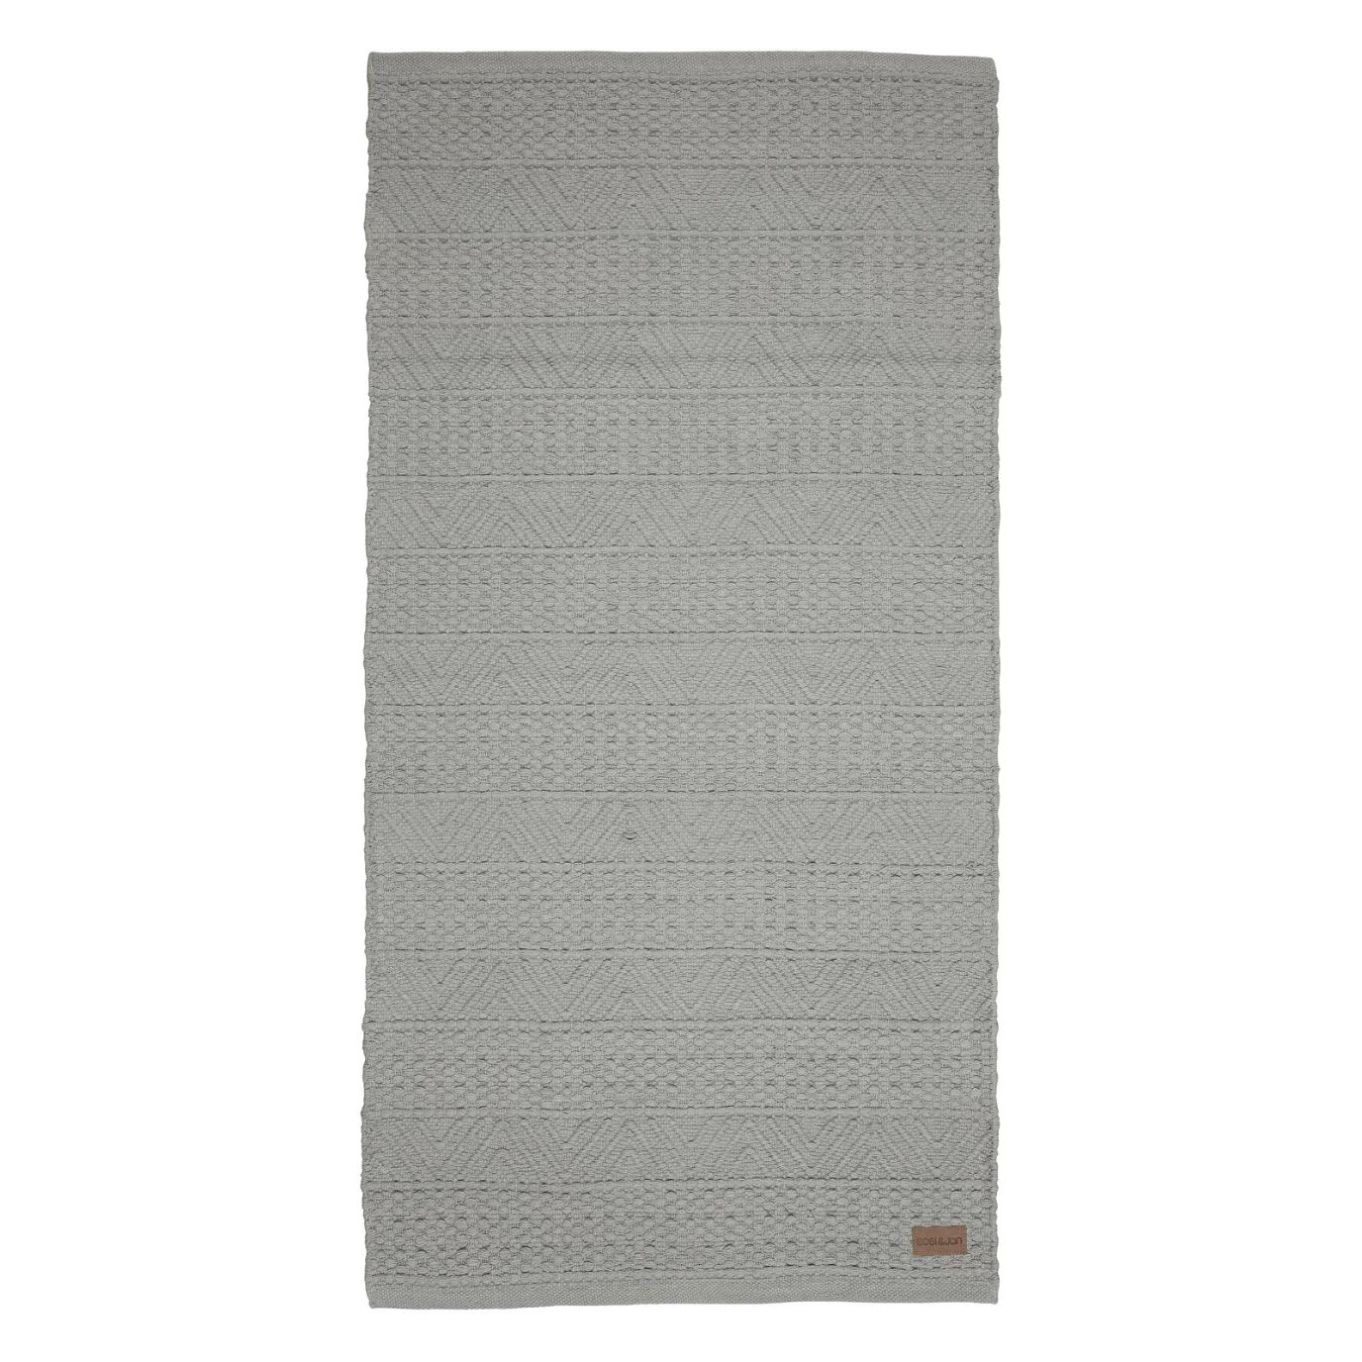 Beatrice en grå gångmatta i 100% bomull som är vävd i ett härligt mönster i mått 70 x 200 cm.